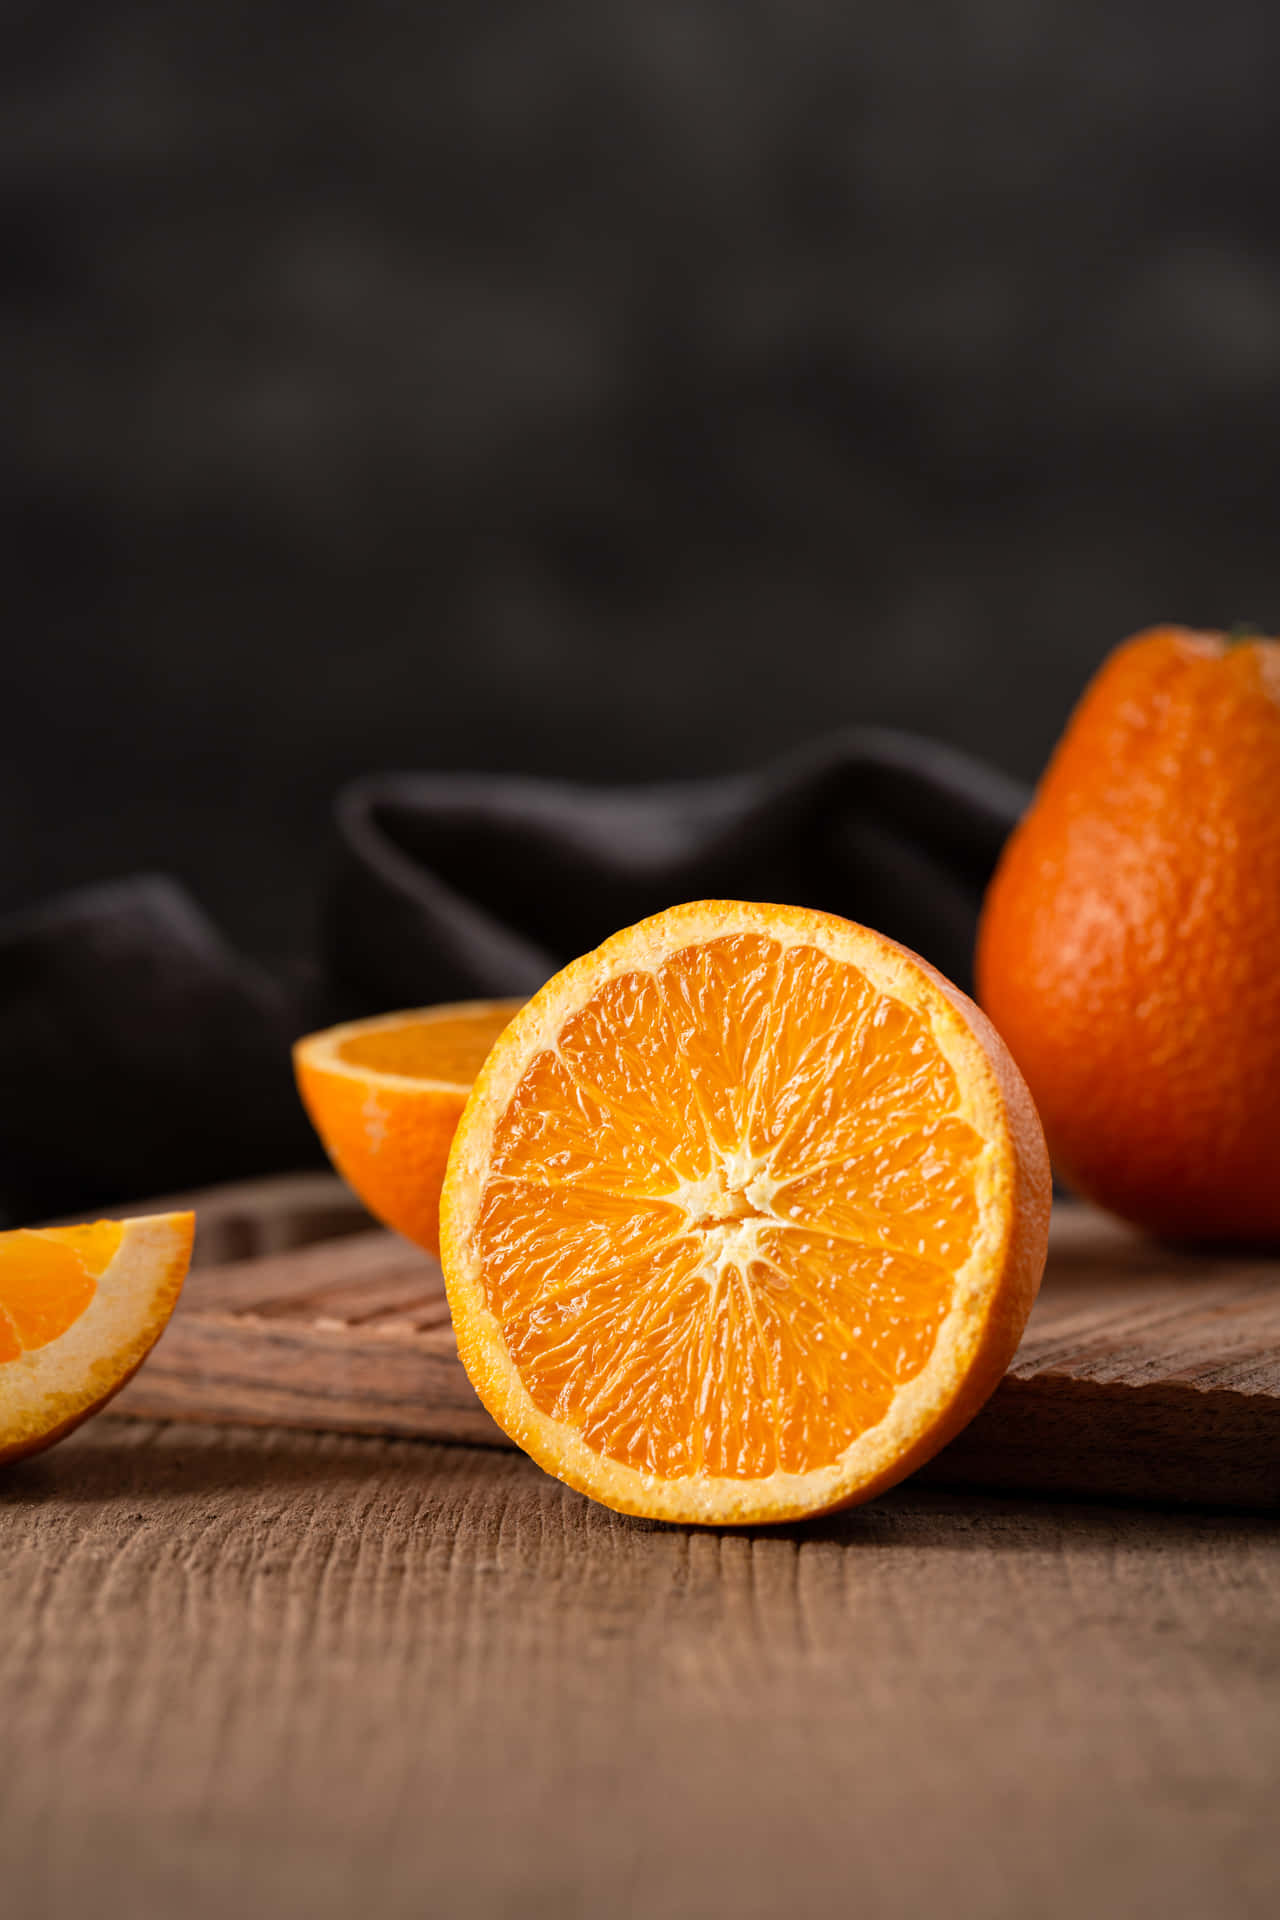 Orange Background Photos, Download The BEST Free Orange Background Stock  Photos & HD Images